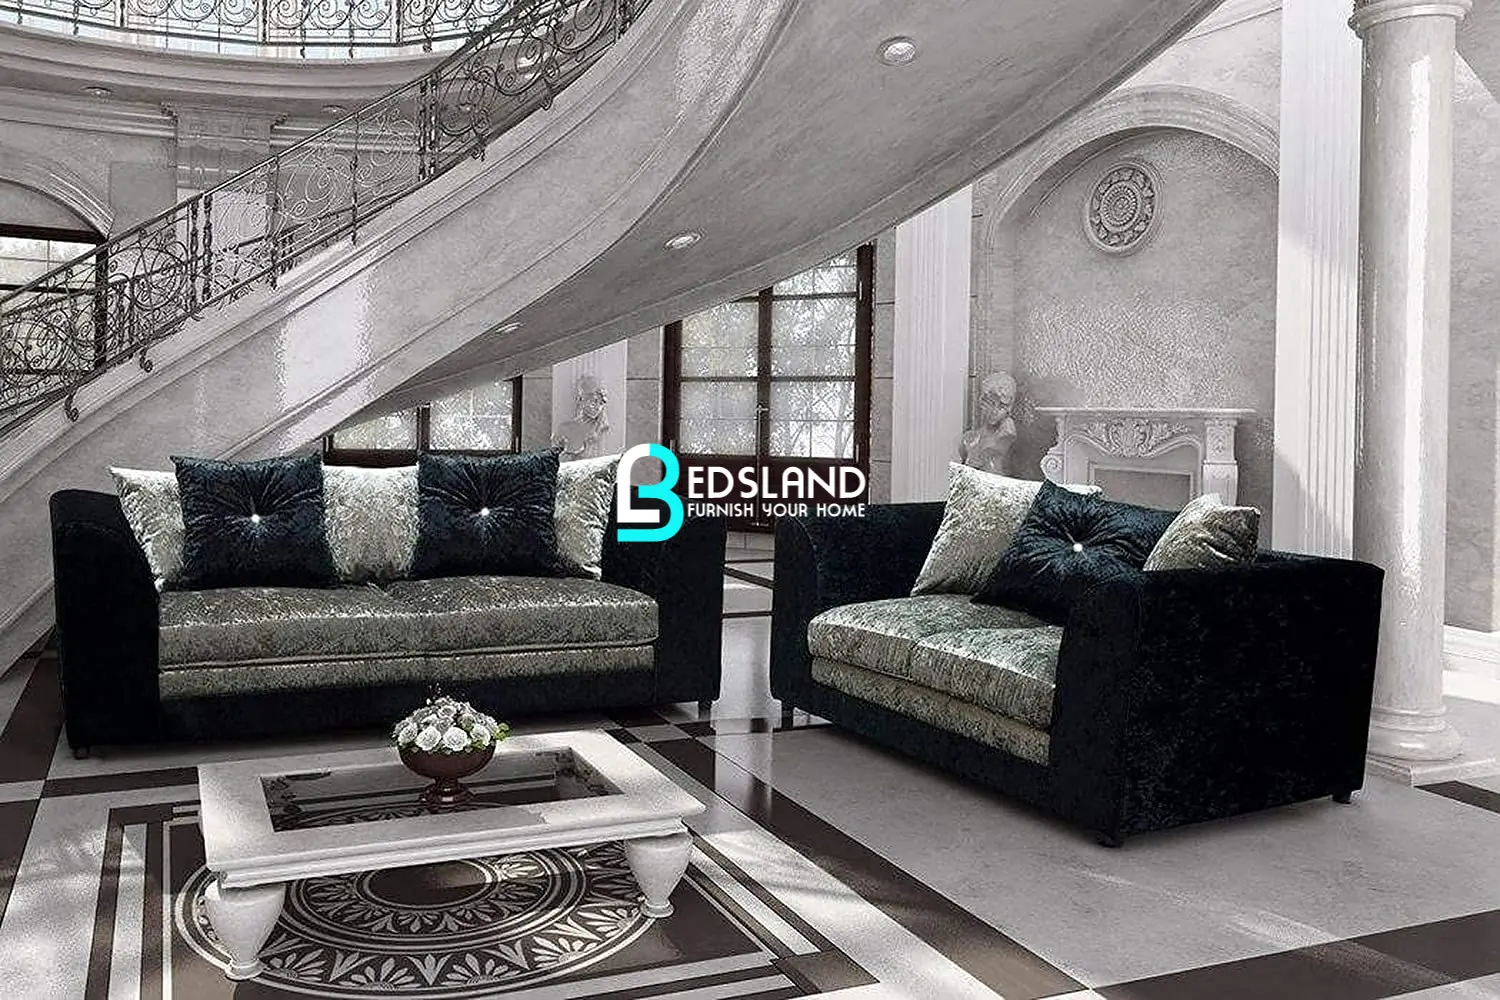 Black And Silver Crushed Velvet Sofa - Bedsland Furniture